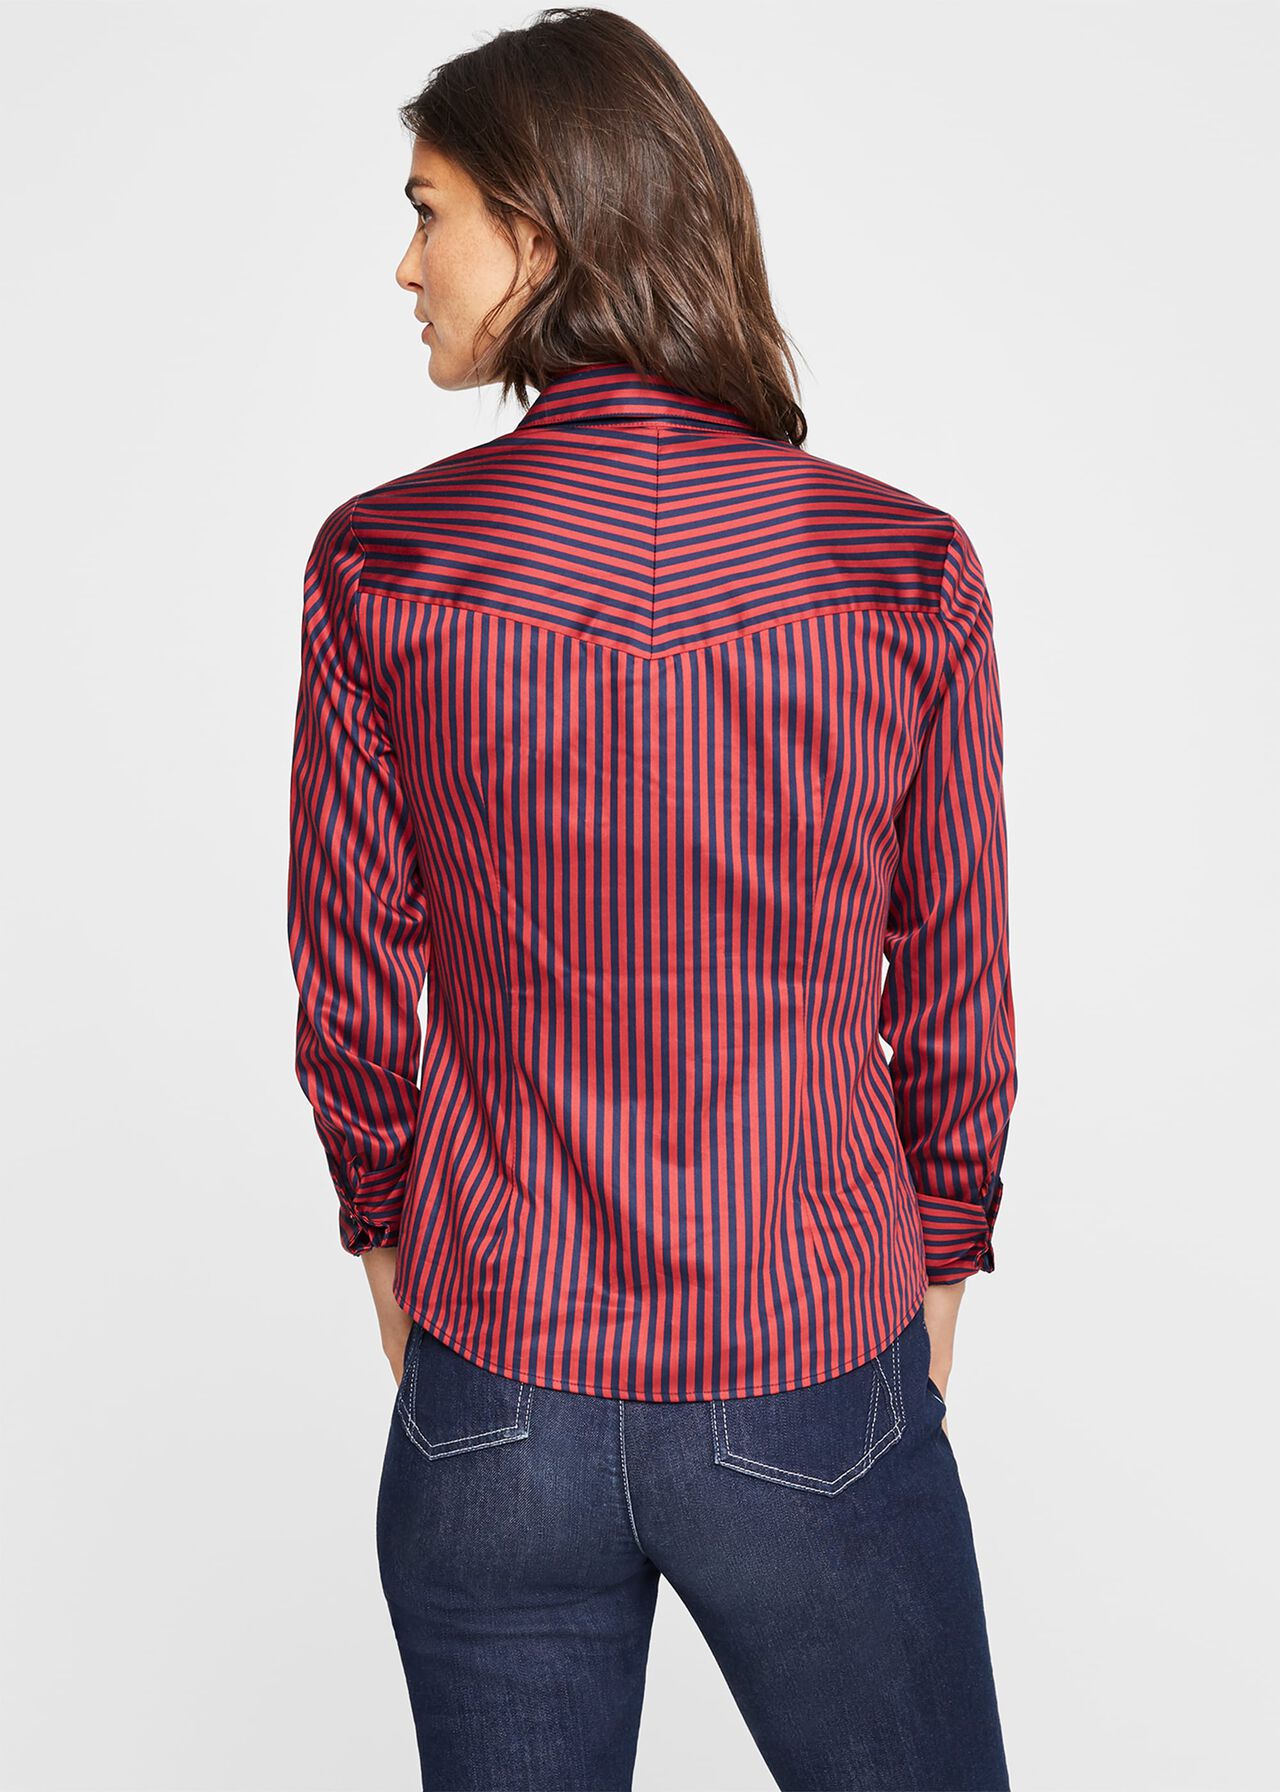 Caleigh Stripe Shirt